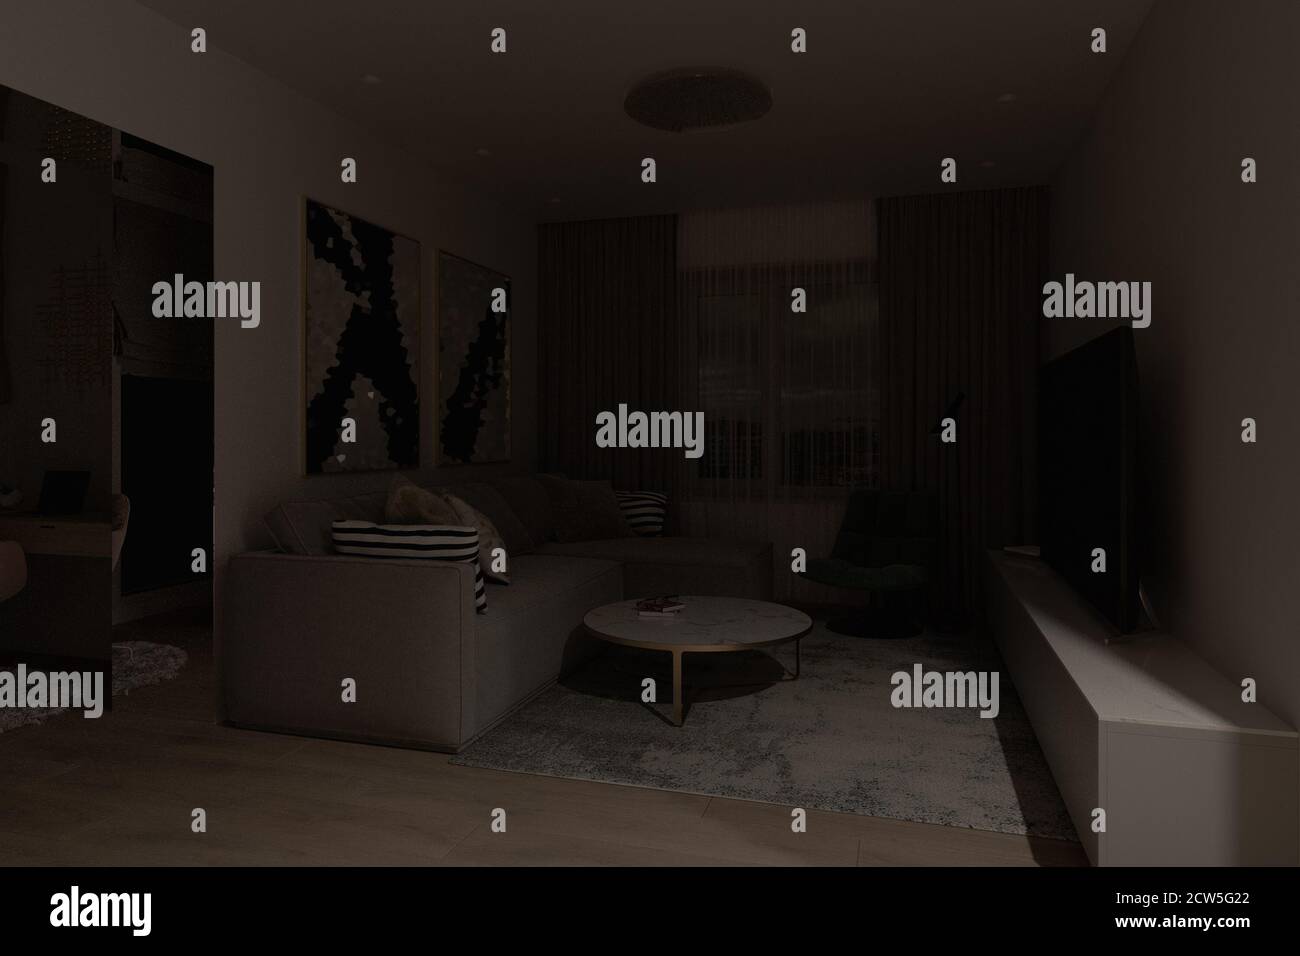 Una serie di illustrazioni 3d del soggiorno interno con illuminazione diversa Foto Stock